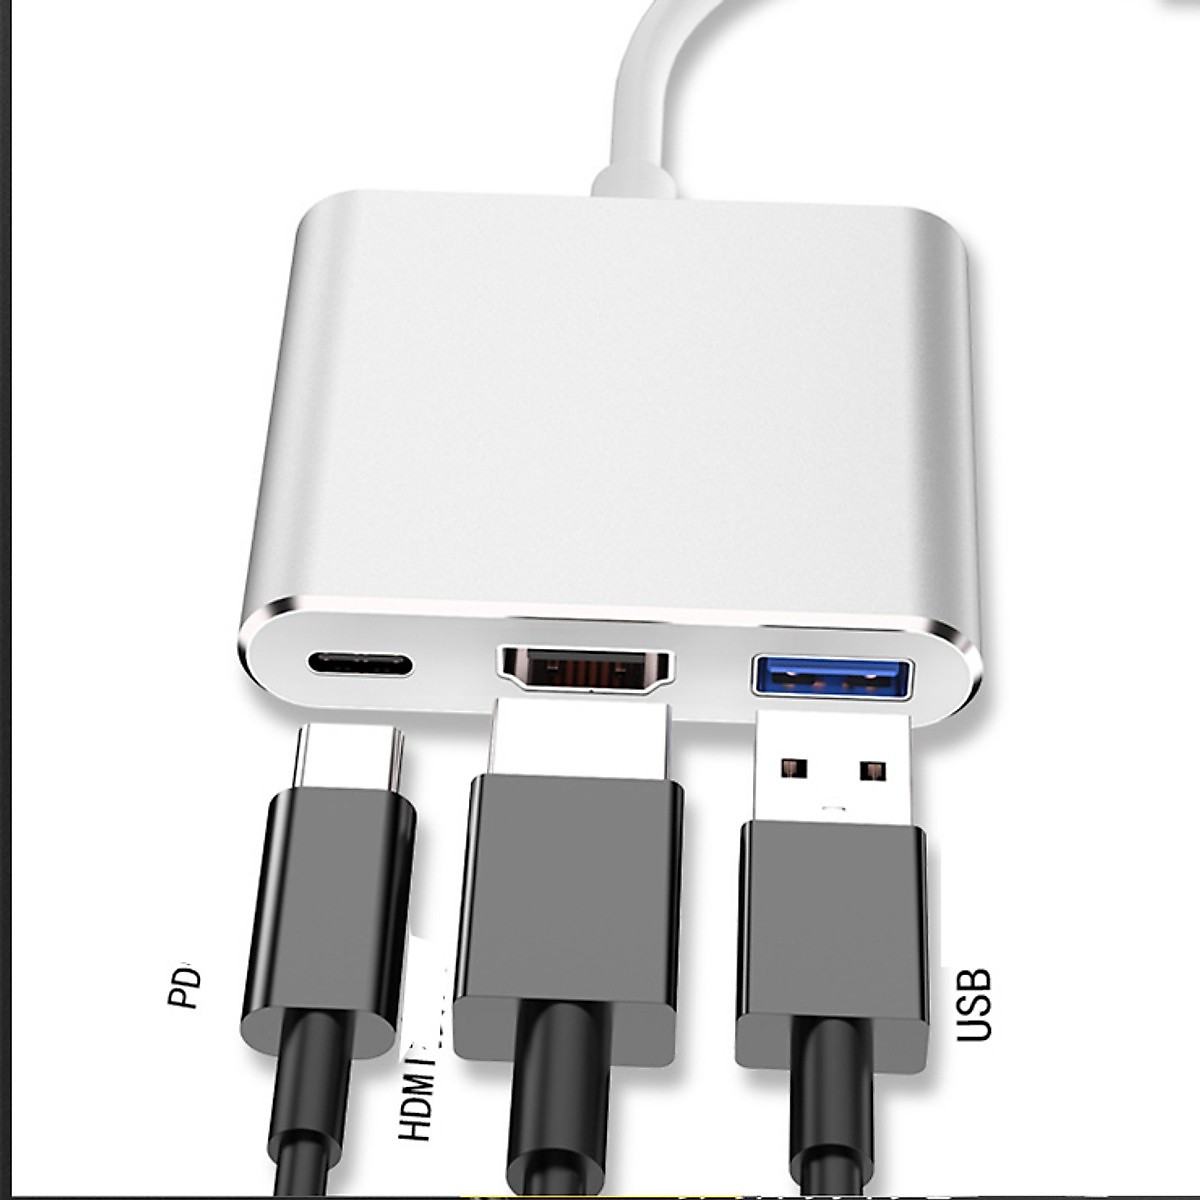 Hub chuyển đổi USB Type C 3in1 sang HDMI, USB 3.0, cổng sạc nhanh PD Type-C dành cho Laptop, Macbook, Điện thoại, Samsung Dex